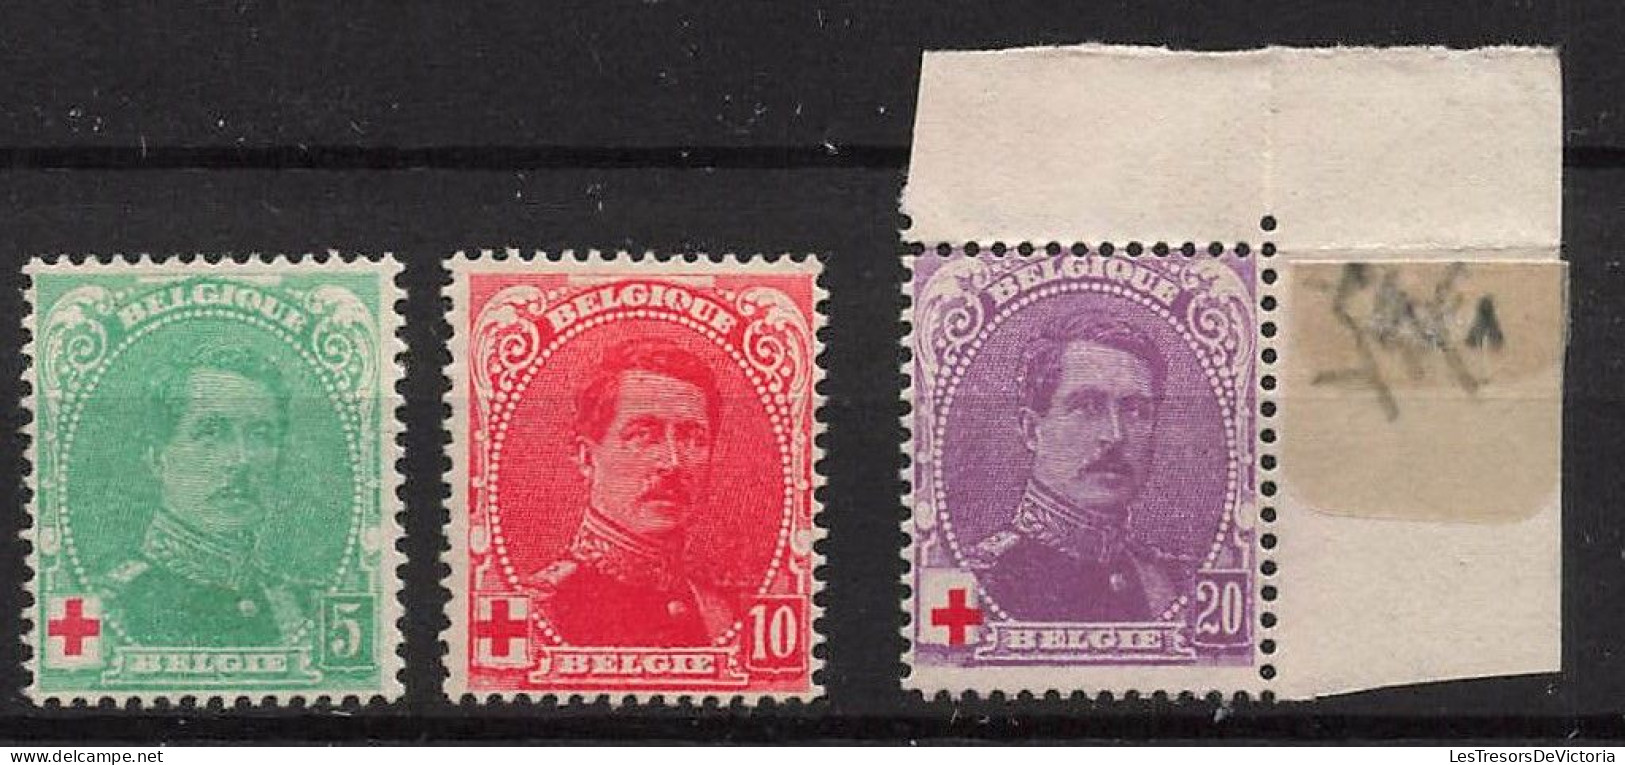 Timbre - Belgique - 1914 - COB 129/30* Et 131**MNH - Cote 58 - 1914-1915 Croix-Rouge